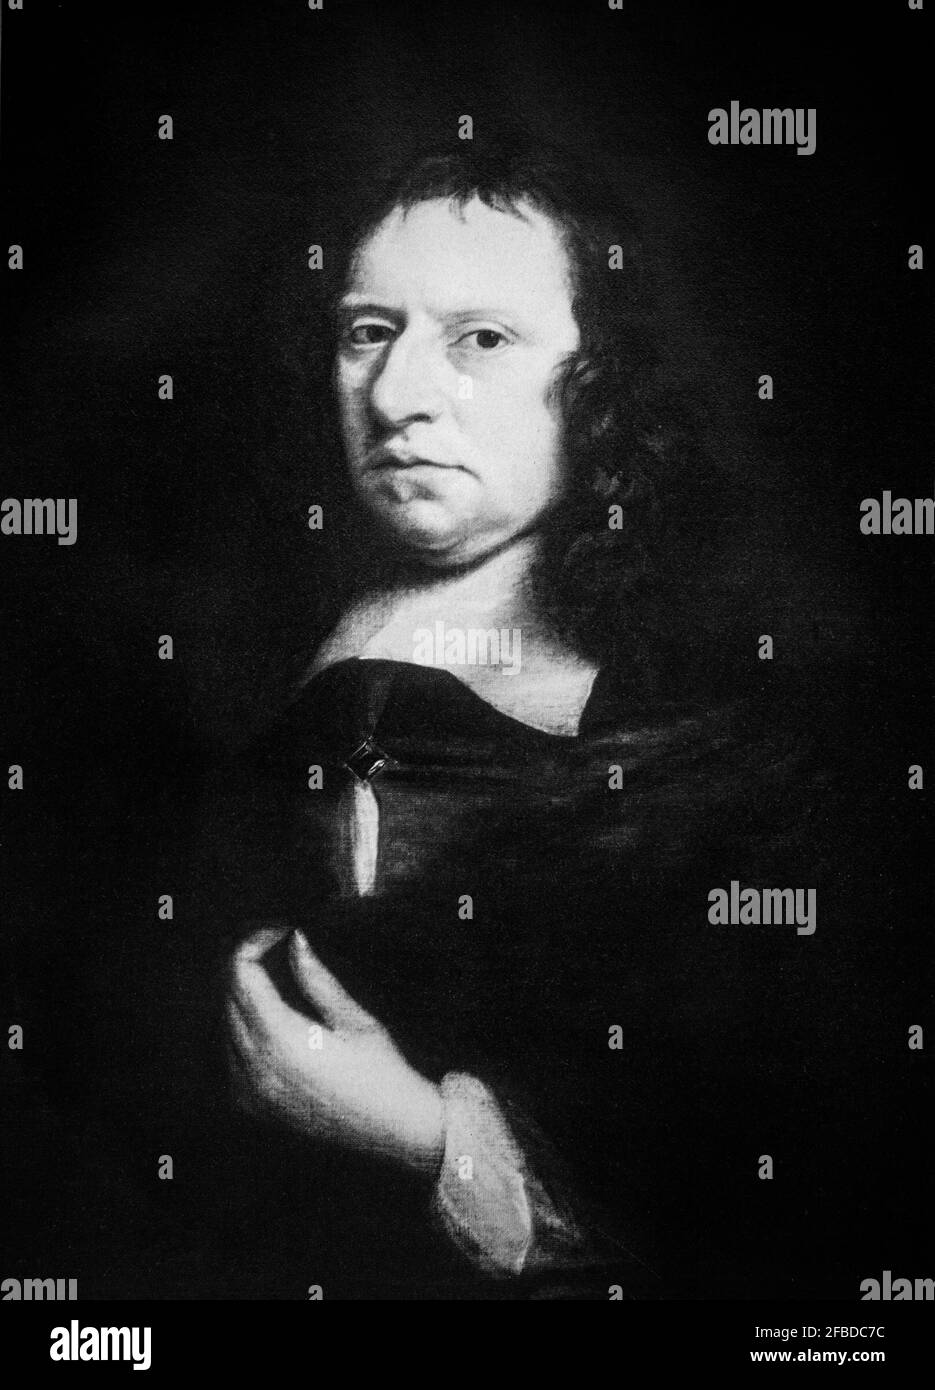 Un ritratto di Oliver Cromwell (1599-1658), generale e statista inglese che, prima come subordinato e poi come comandante in capo, guidò gli eserciti del Parlamento d'Inghilterra contro Re Carlo i durante la guerra civile inglese. Successivamente governò le Isole britanniche come Lord Protector dal 1653 fino alla sua morte nel 1658, mentre agì contemporaneamente come capo di stato e capo di governo del nuovo commonwealth repubblicano. Foto Stock